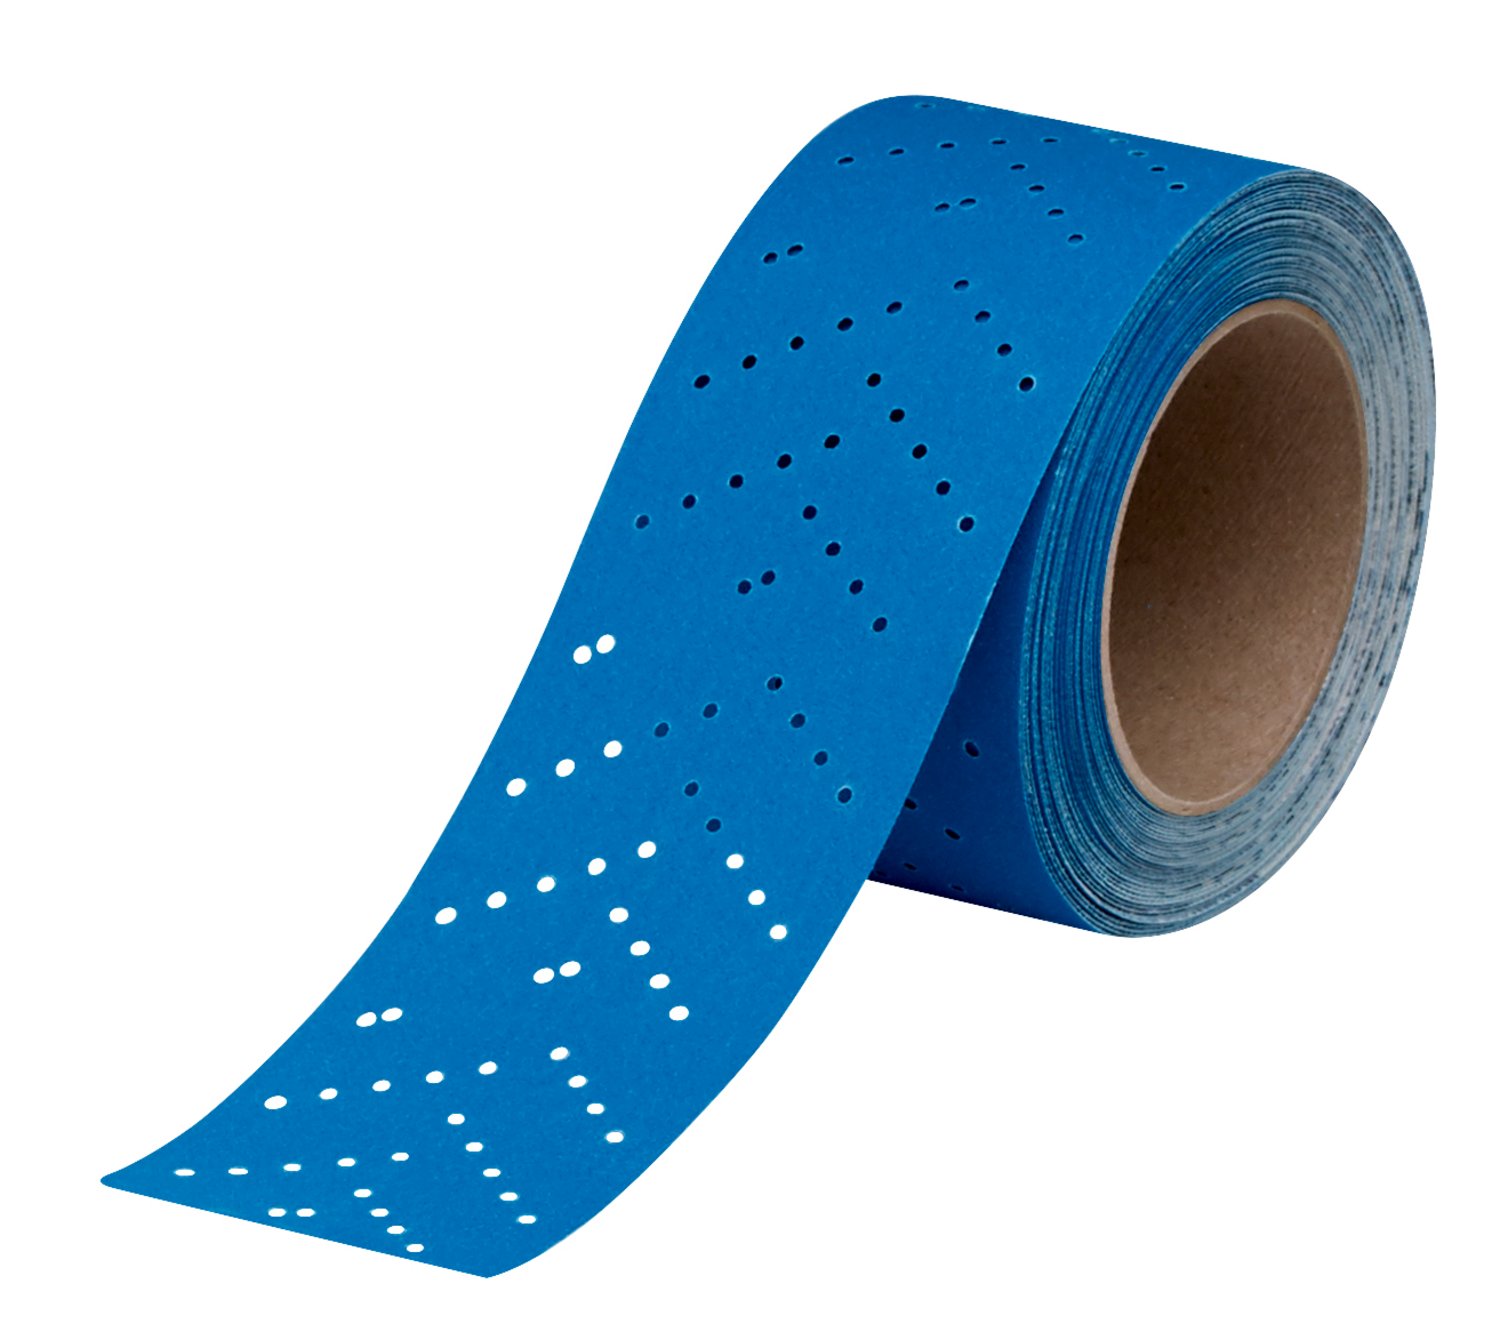 7100219219 - 3M Hookit Blue Abrasive Sheet Roll, 36193, 240 grade, 2.75 in x 13 yd, Multi-hole, 4 per case